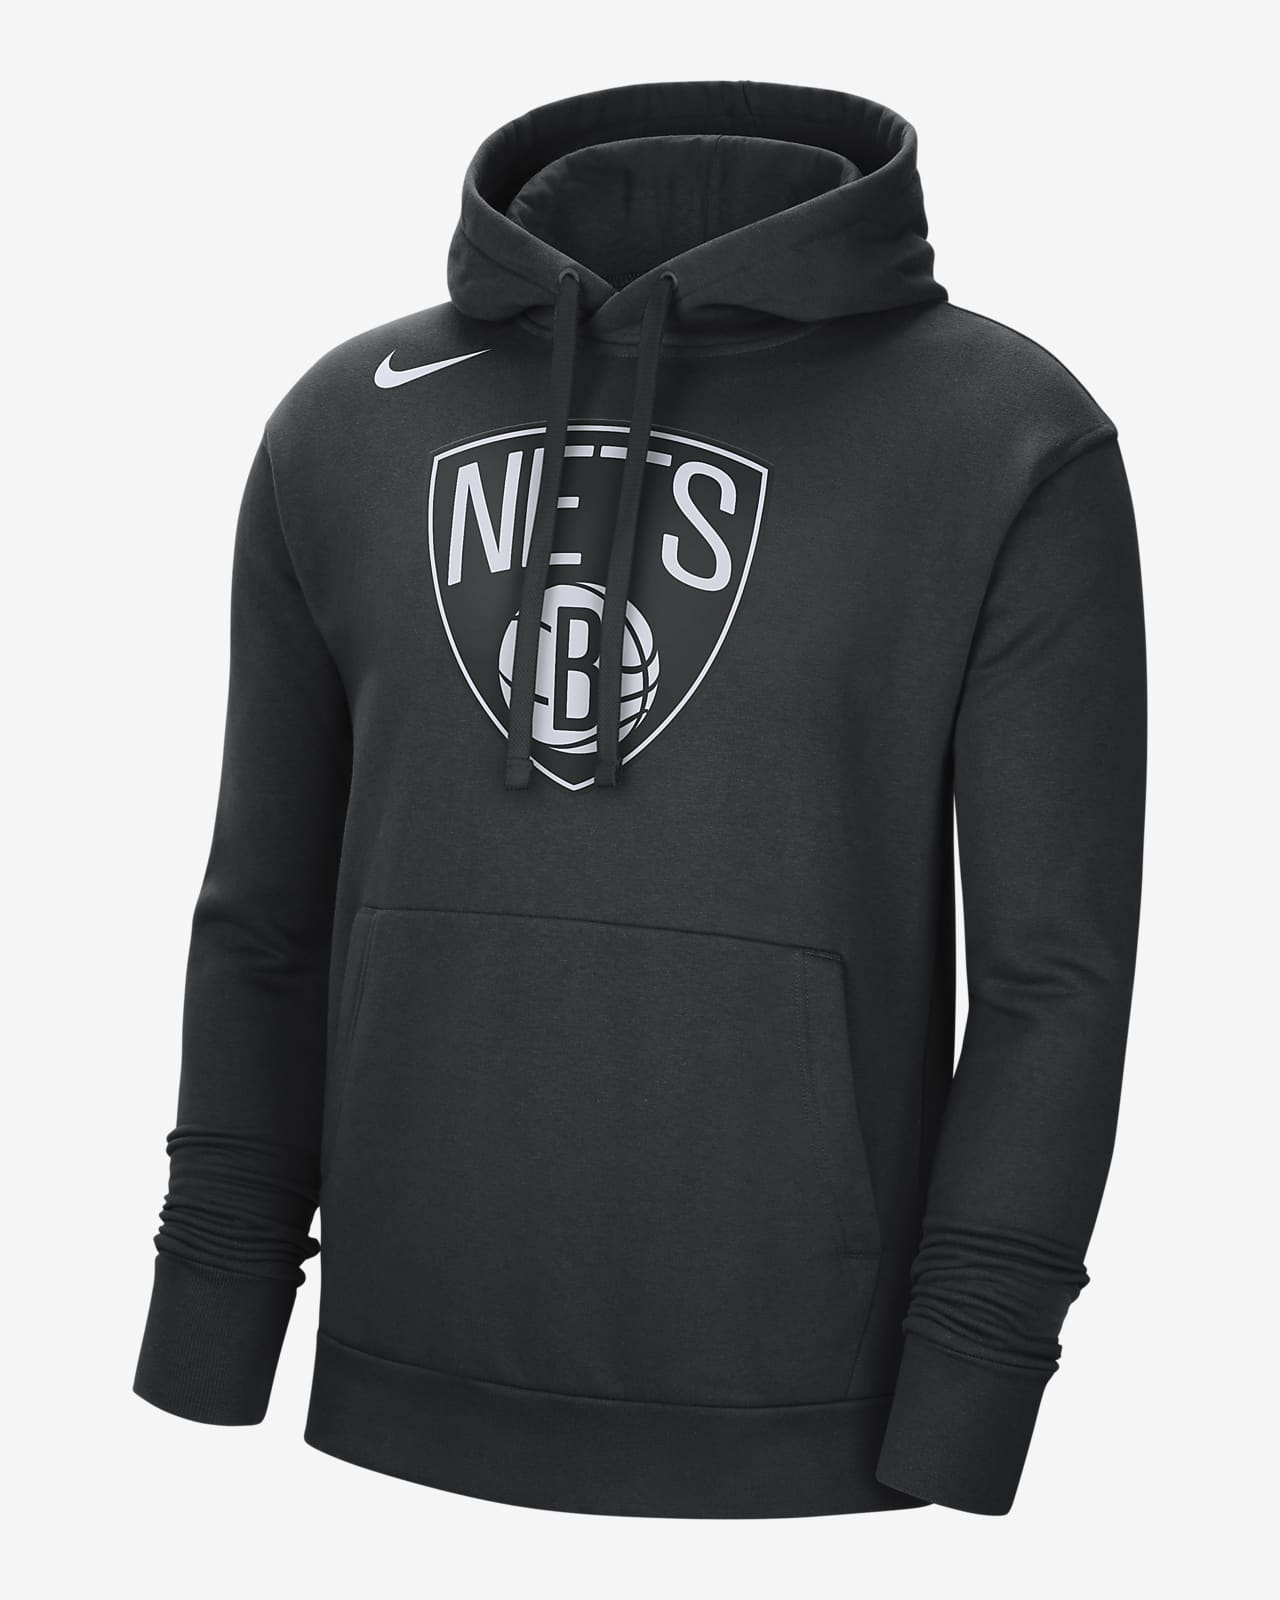 Nike Men's Brooklyn Nets Black Fleece Pullover Hoodie, XL